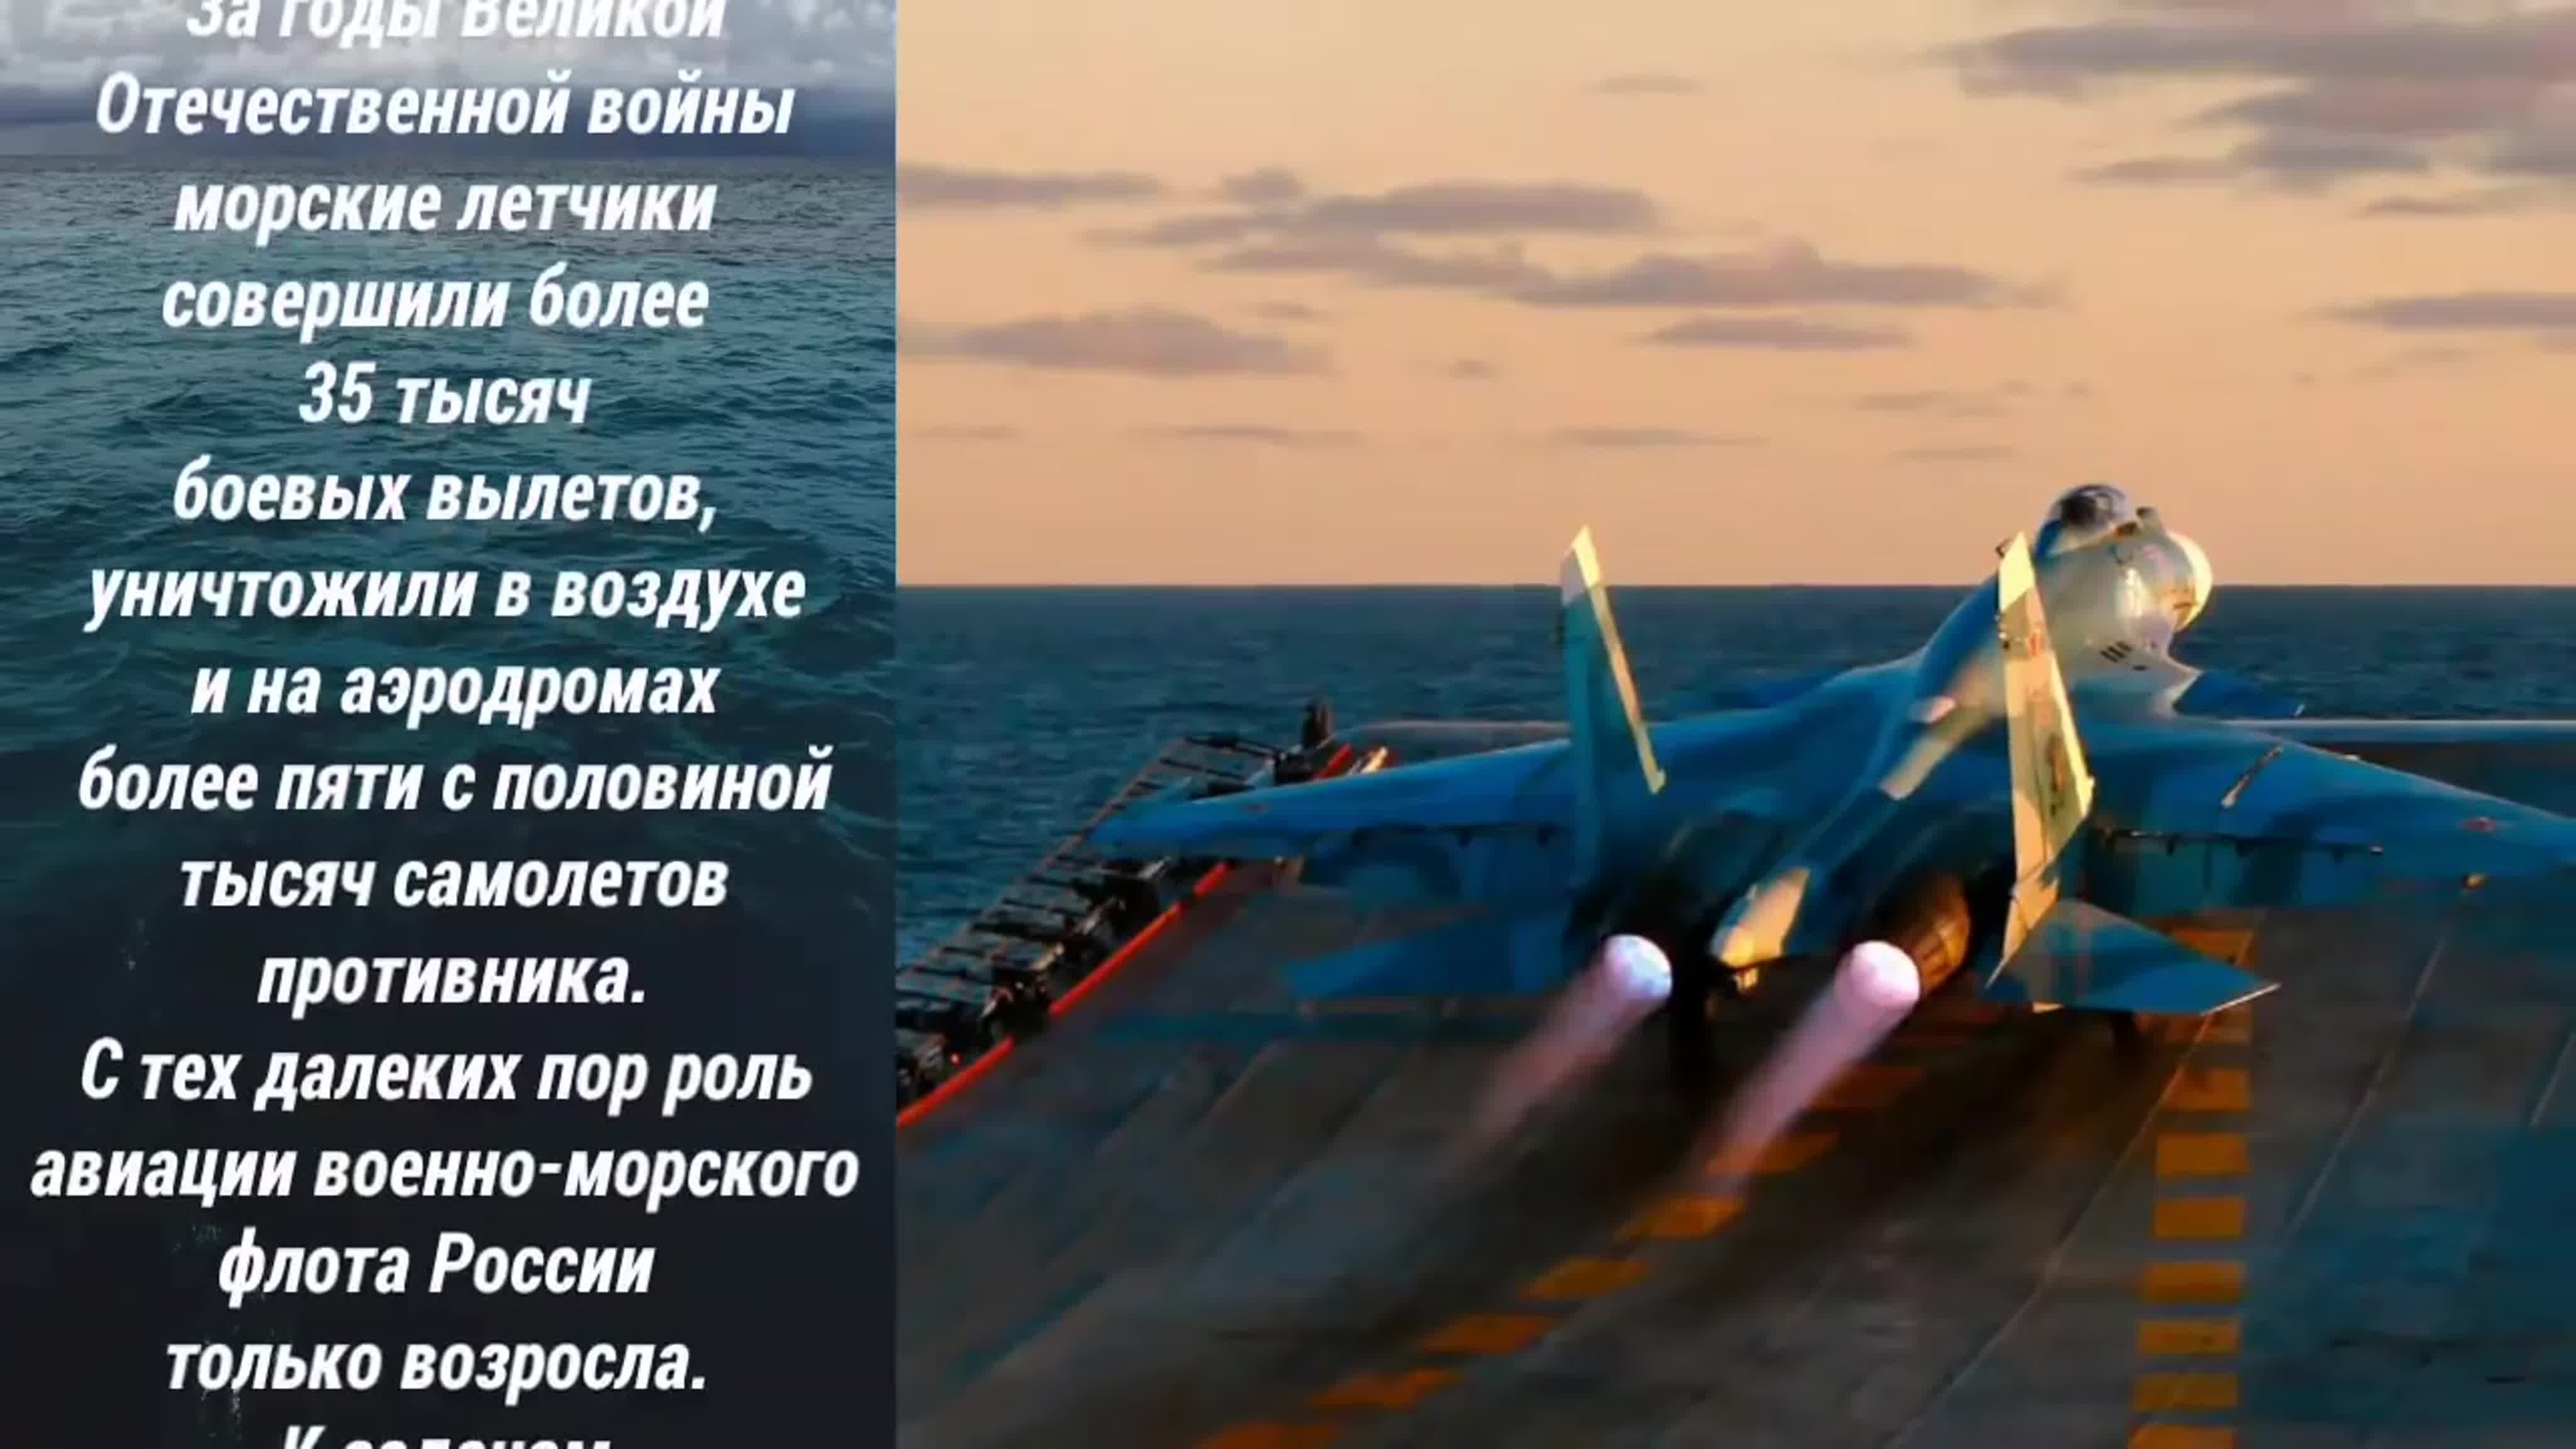 Днем основания морской авиации военно-морского флота России